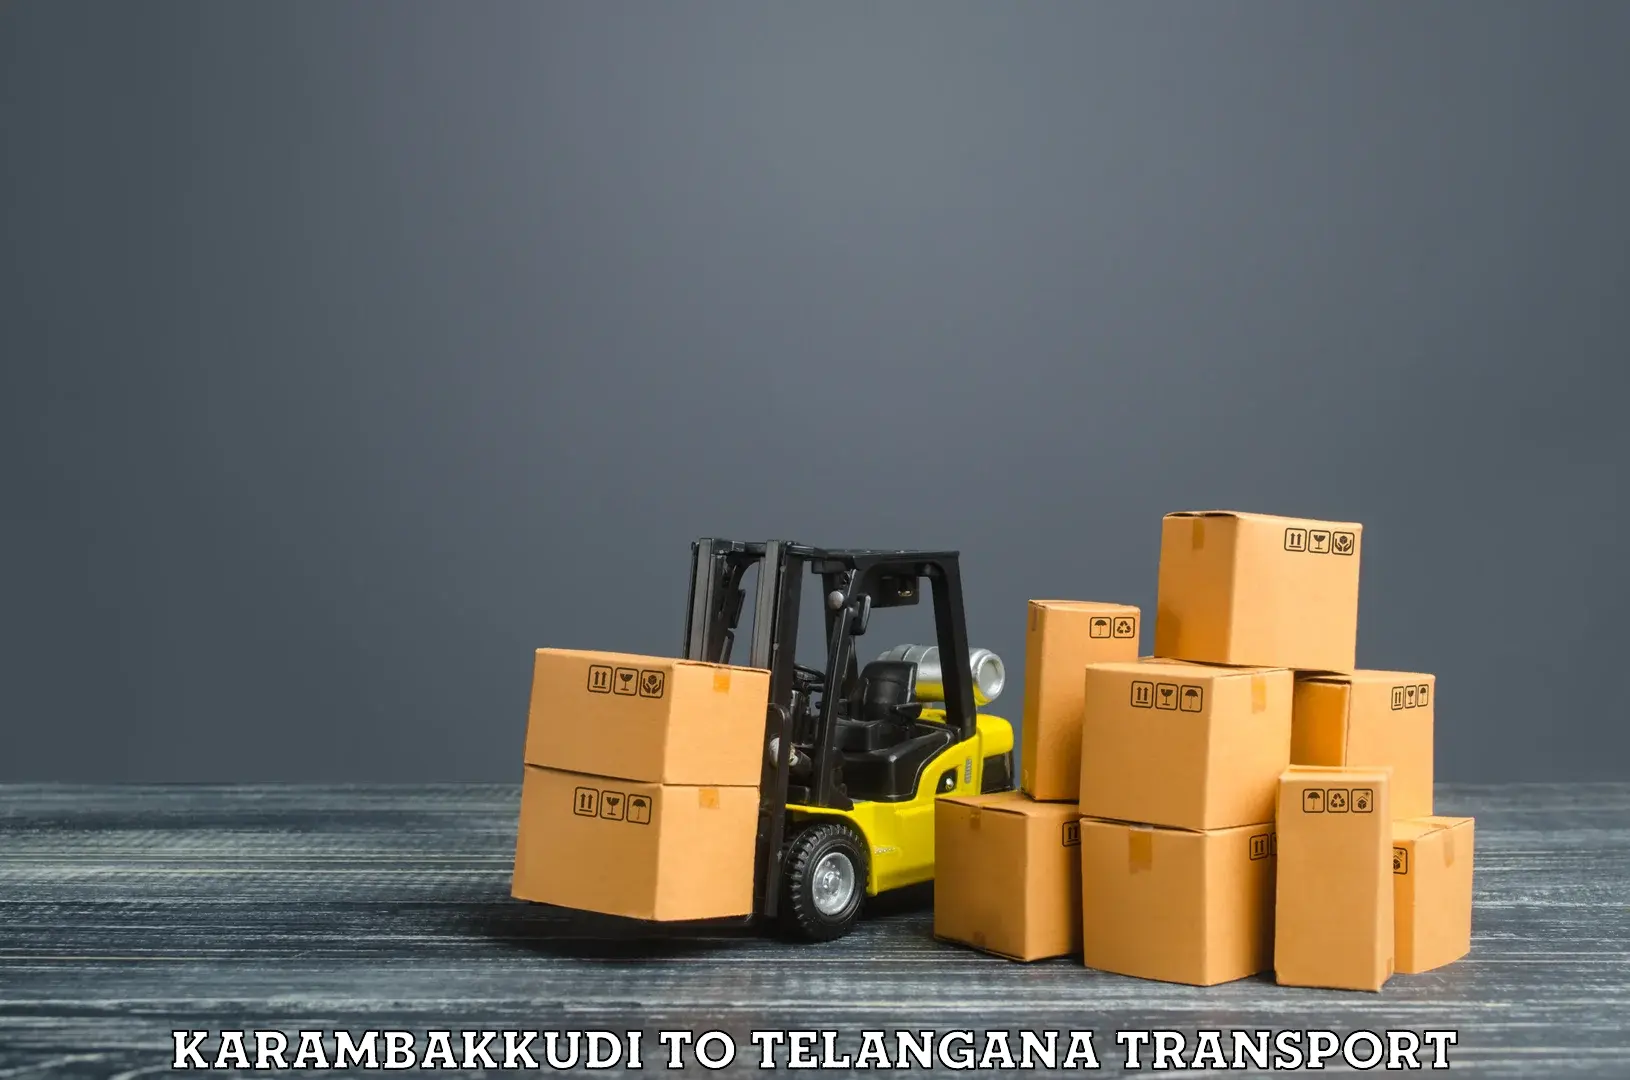 Furniture transport service Karambakkudi to Telangana